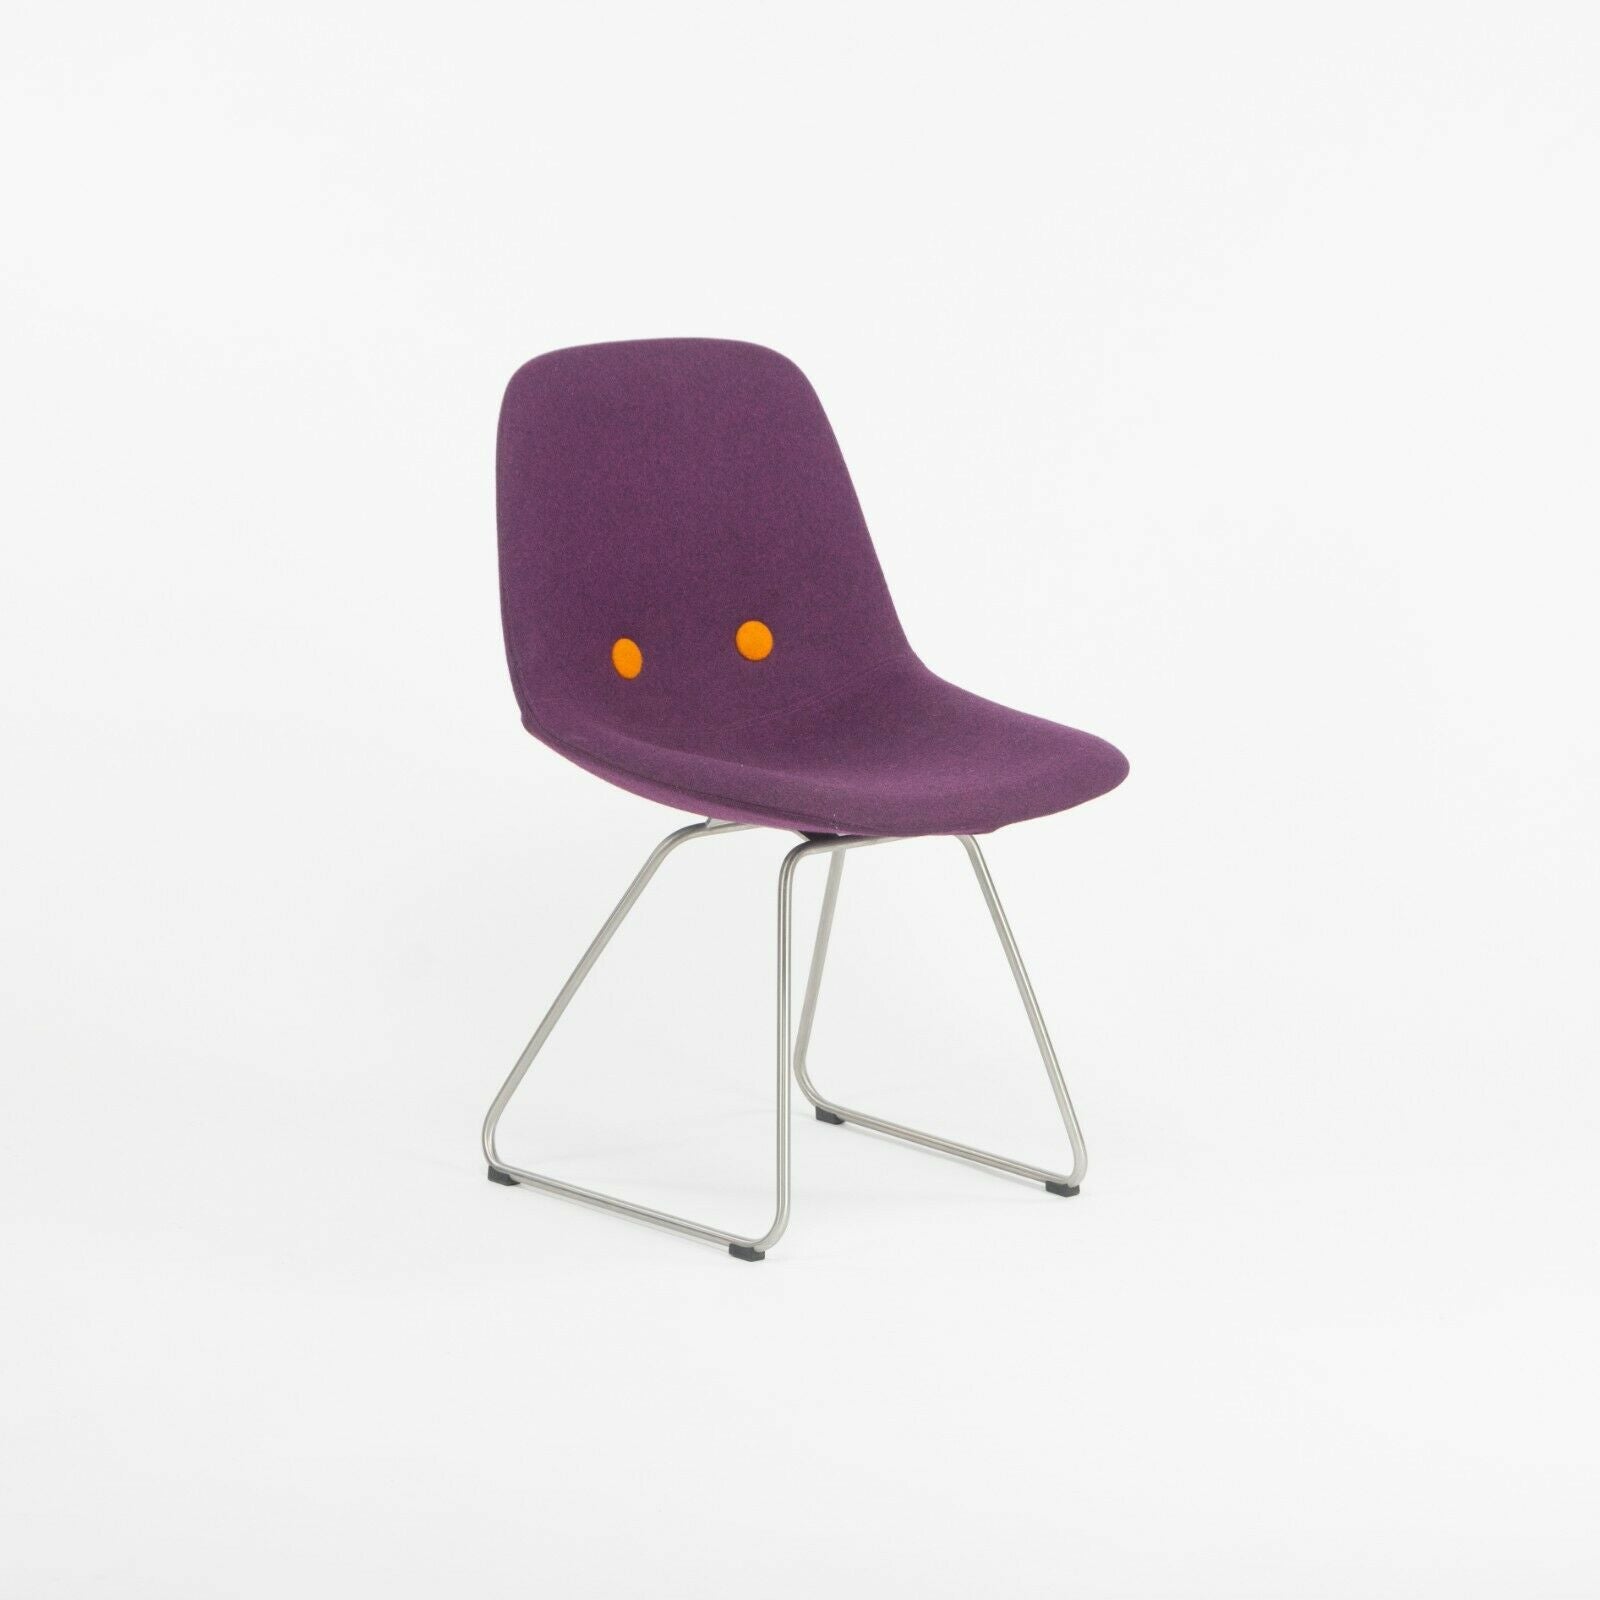 Set of 6 Erik Jorgensen EJ 2 Eyes Chair by Foersom + Hiort-Lorenzen in Purple